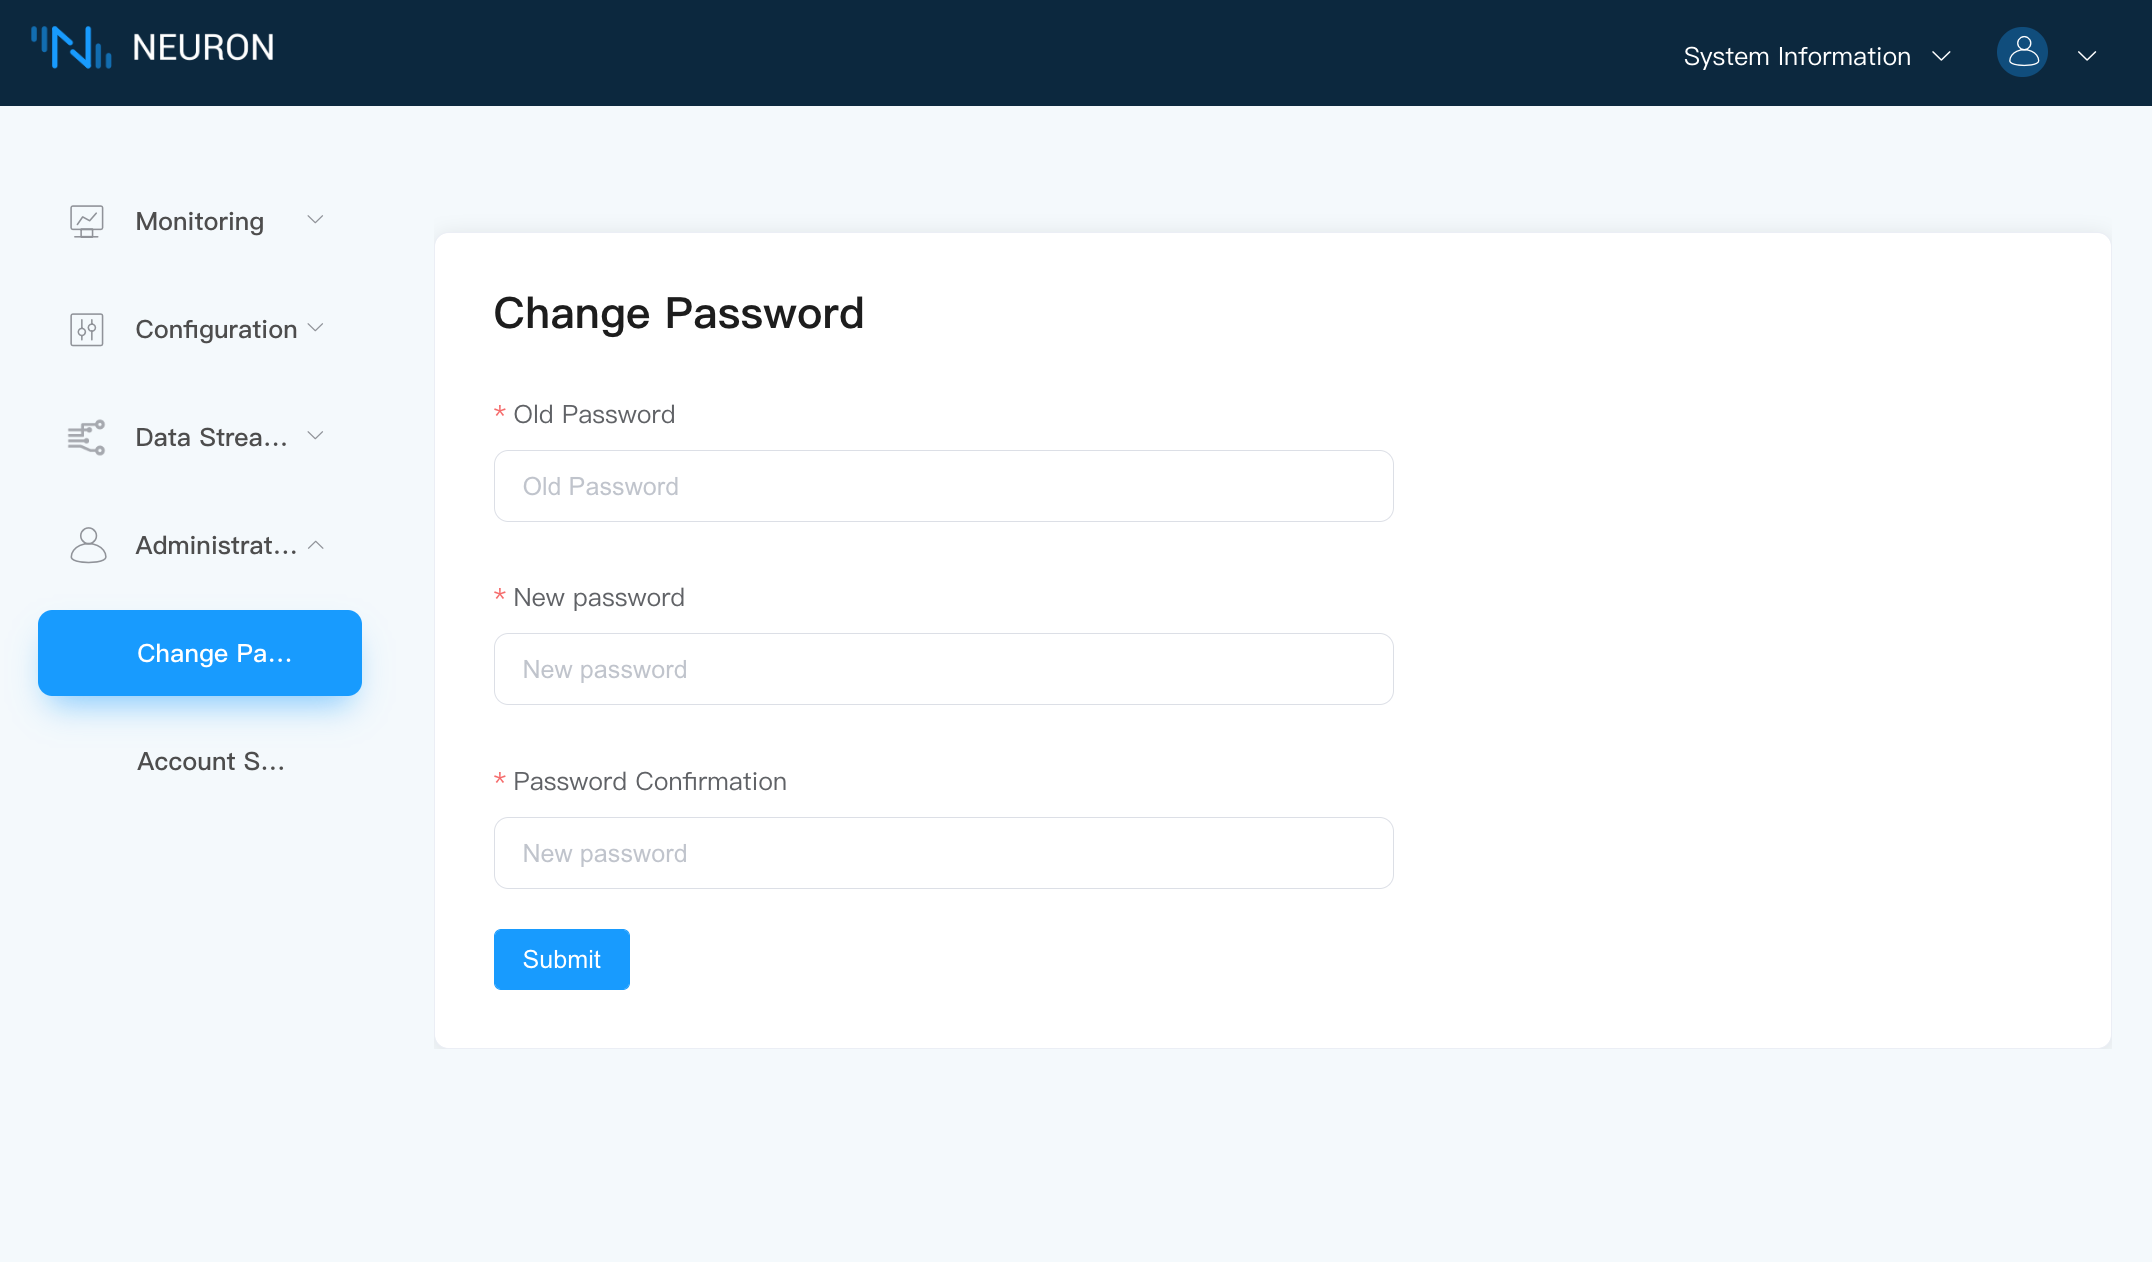 change_password